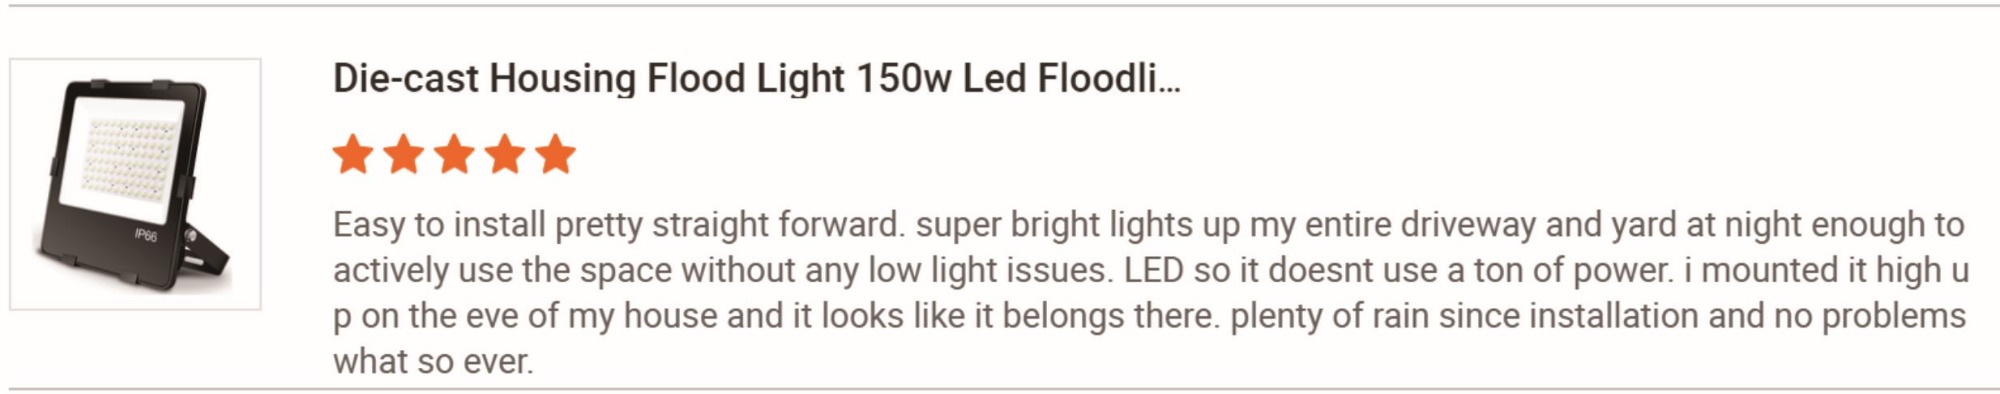 Led flood light review